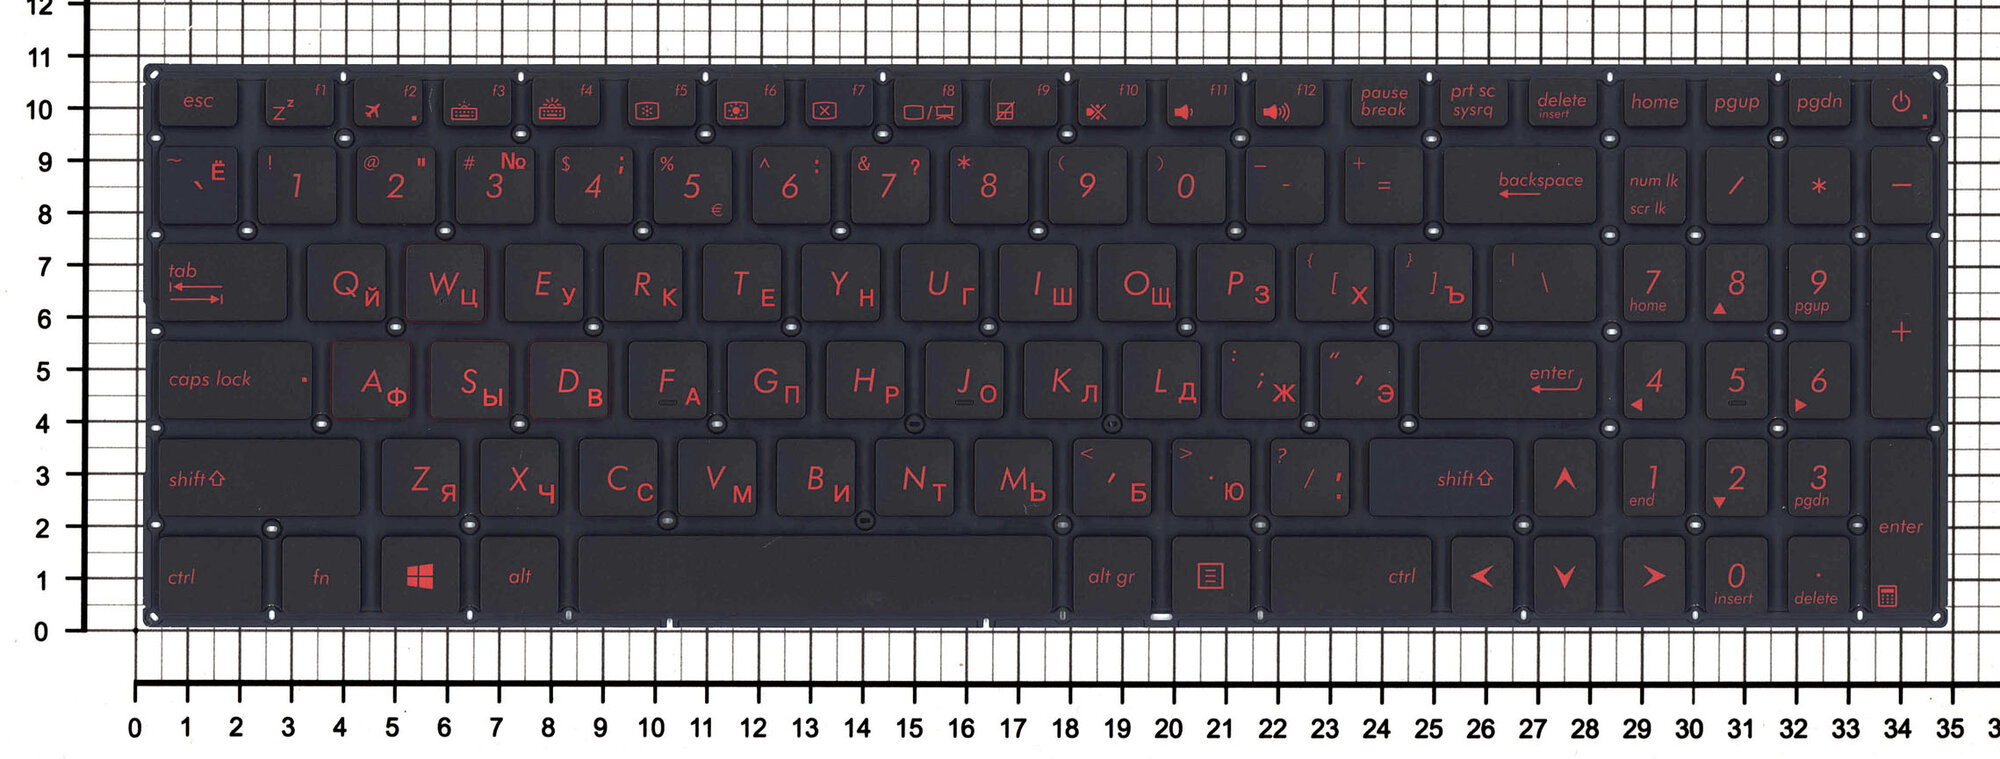 Клавиатура для ноутбука Asus FX502 черная с красной подсветкой